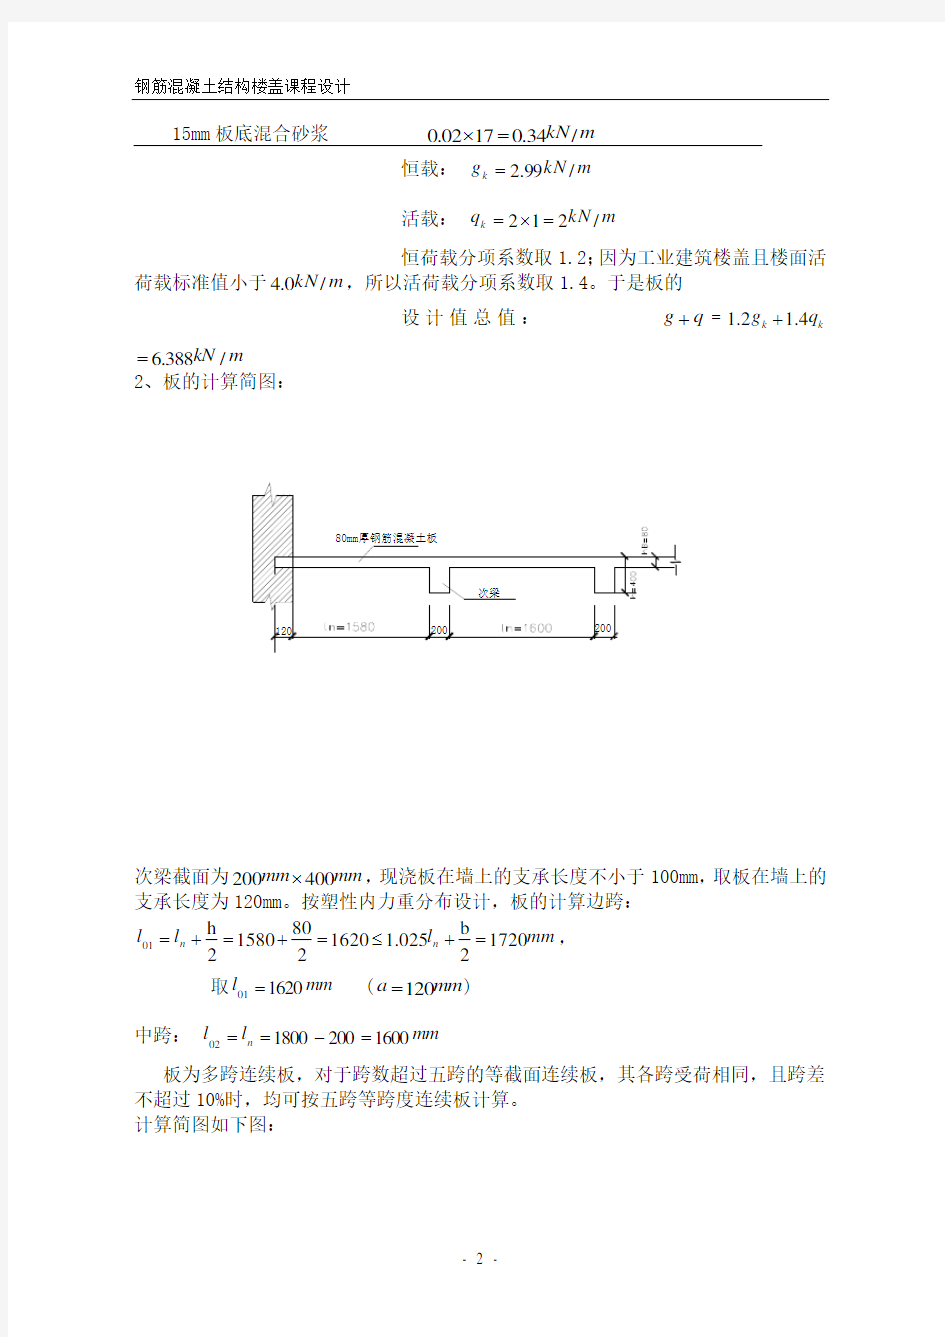 单向板肋梁楼盖设计计算书(参考例题) (2)